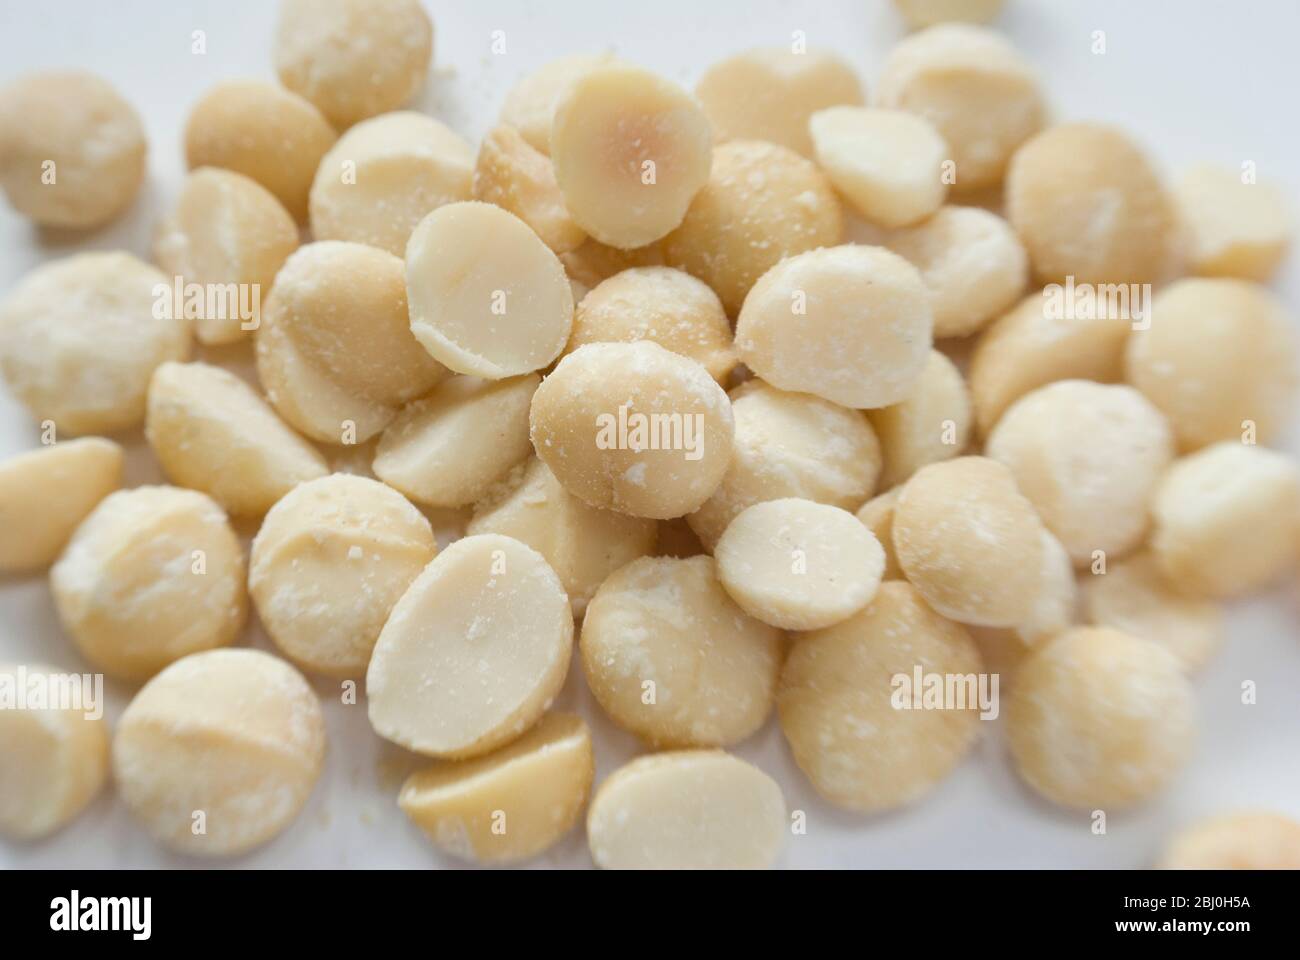 Geschälte geröstete Macadamianüsse, auf weißer Oberfläche - Stockfoto